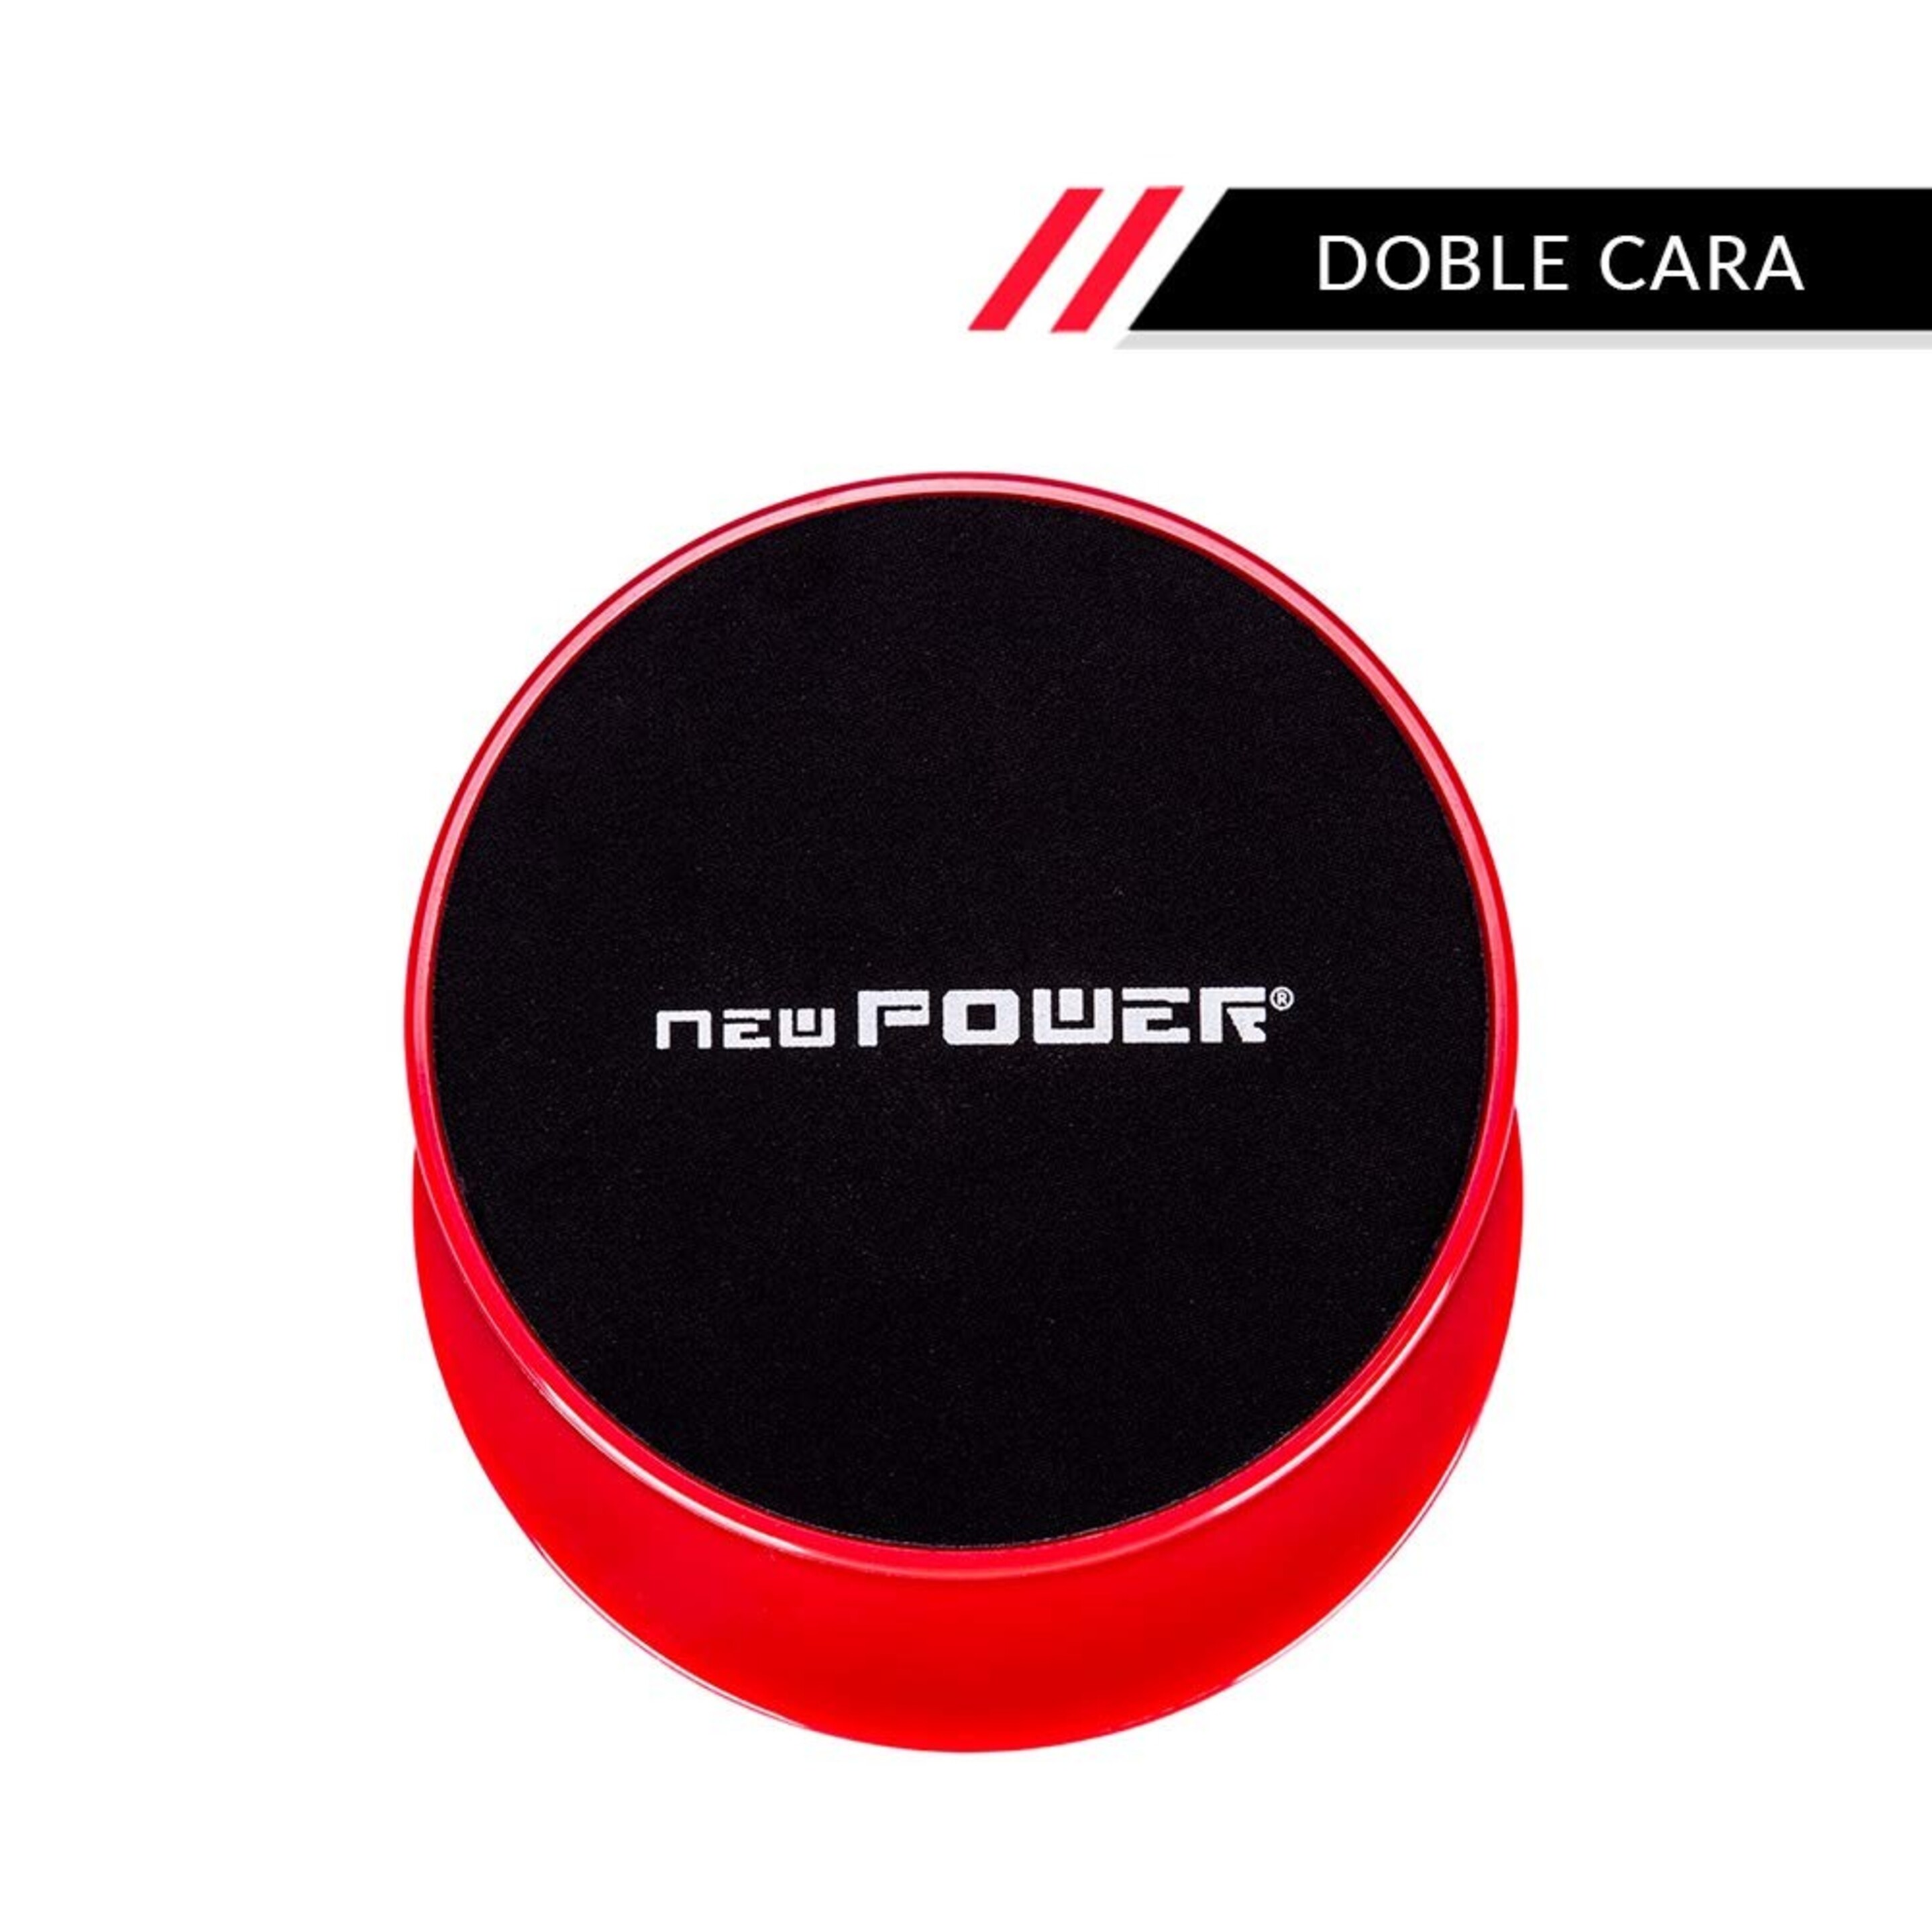 Newpower-discos Deslizantes Fitness Con Doble Cara(ø18cm) Para Mejorar Coordinación Y Equilibrio. - Negro/Rojo  MKP